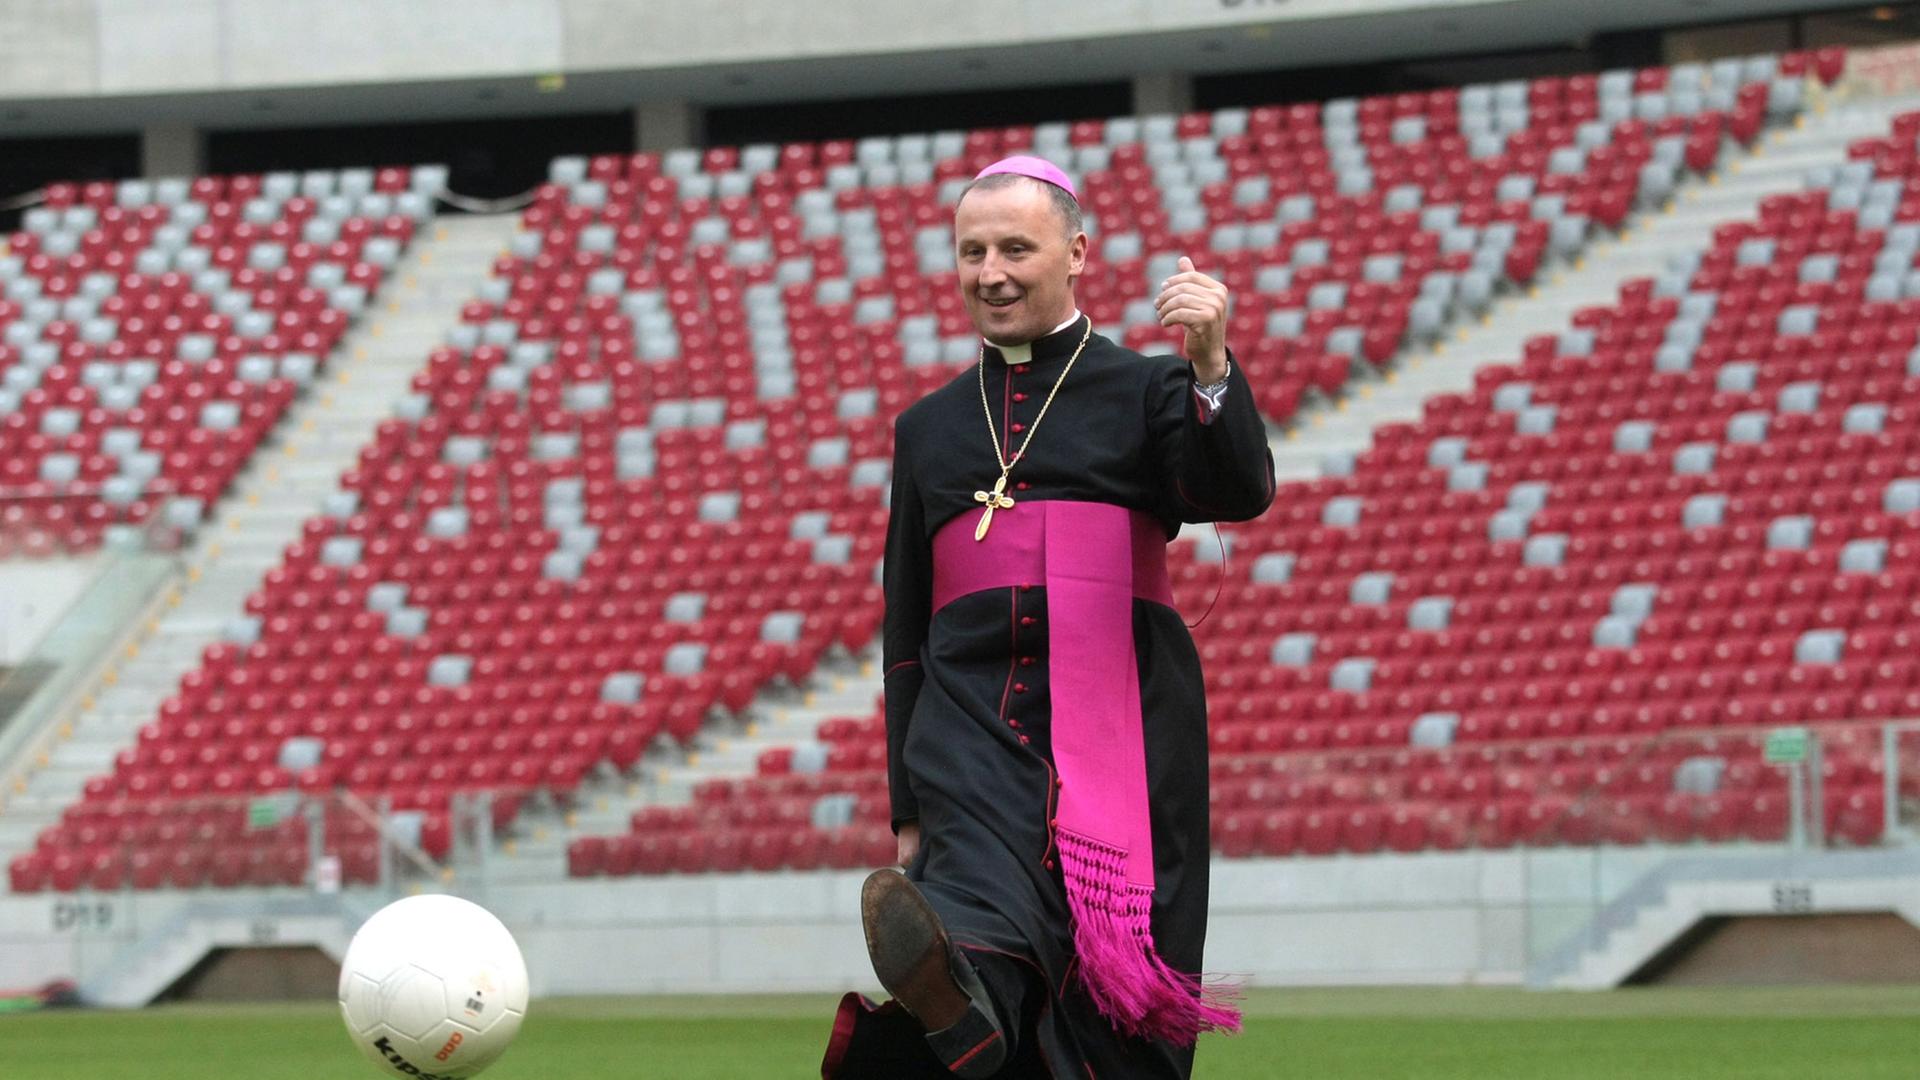 Der polnische Bischoff Marek Solarczyk kickt einen Fußball im Warschauer Nationalstadium. Zuvor hatte er eine Kapelle im Stadion eingeweiht.